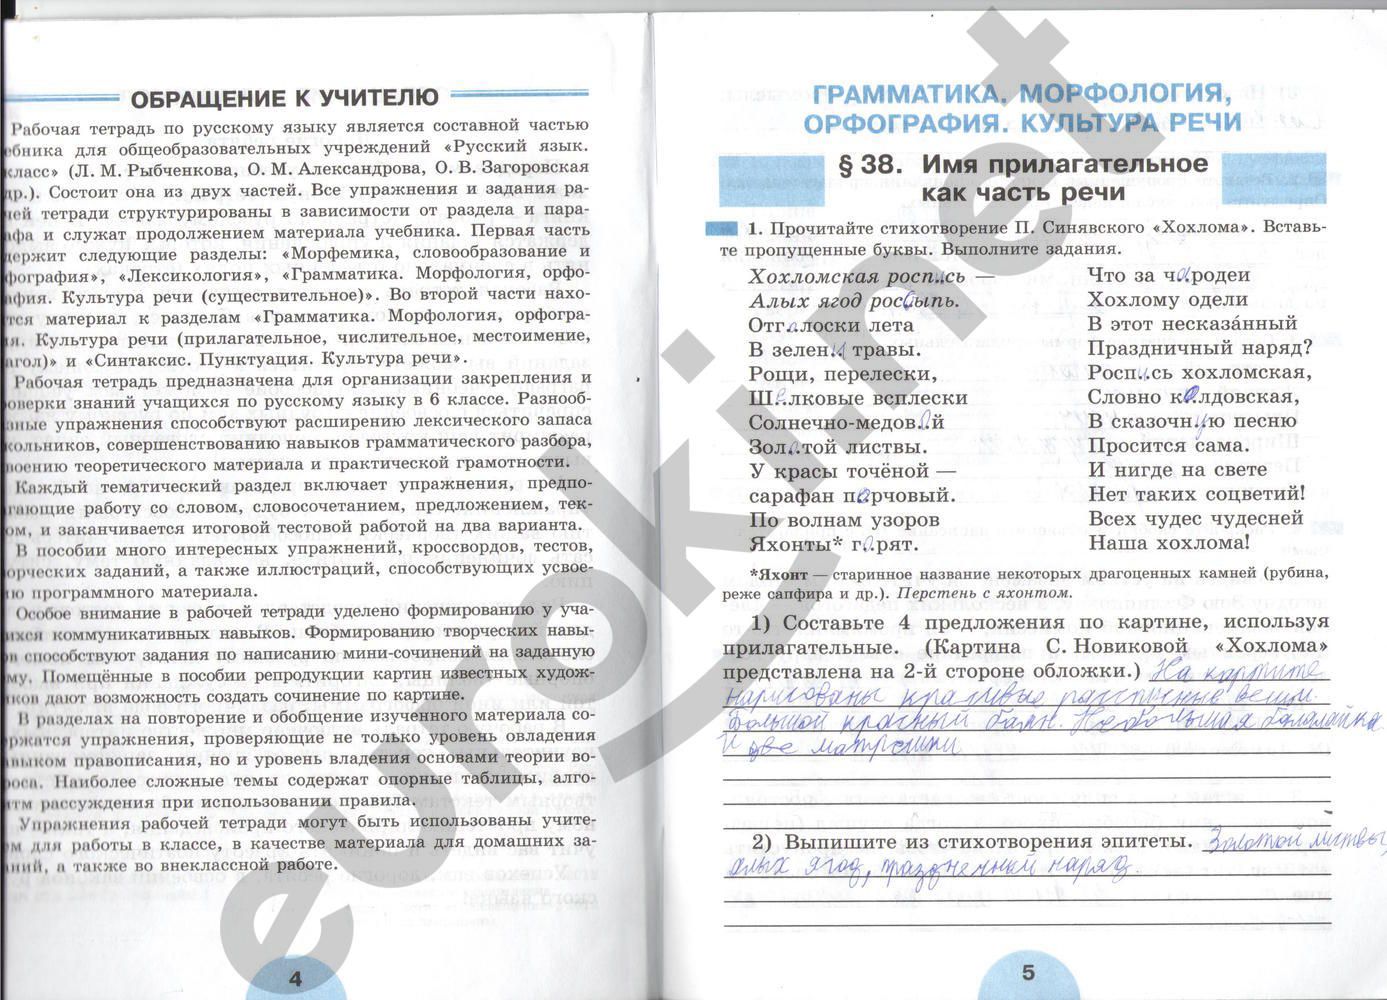 ГДЗ Русский язык 6 класс - стр. 4-5